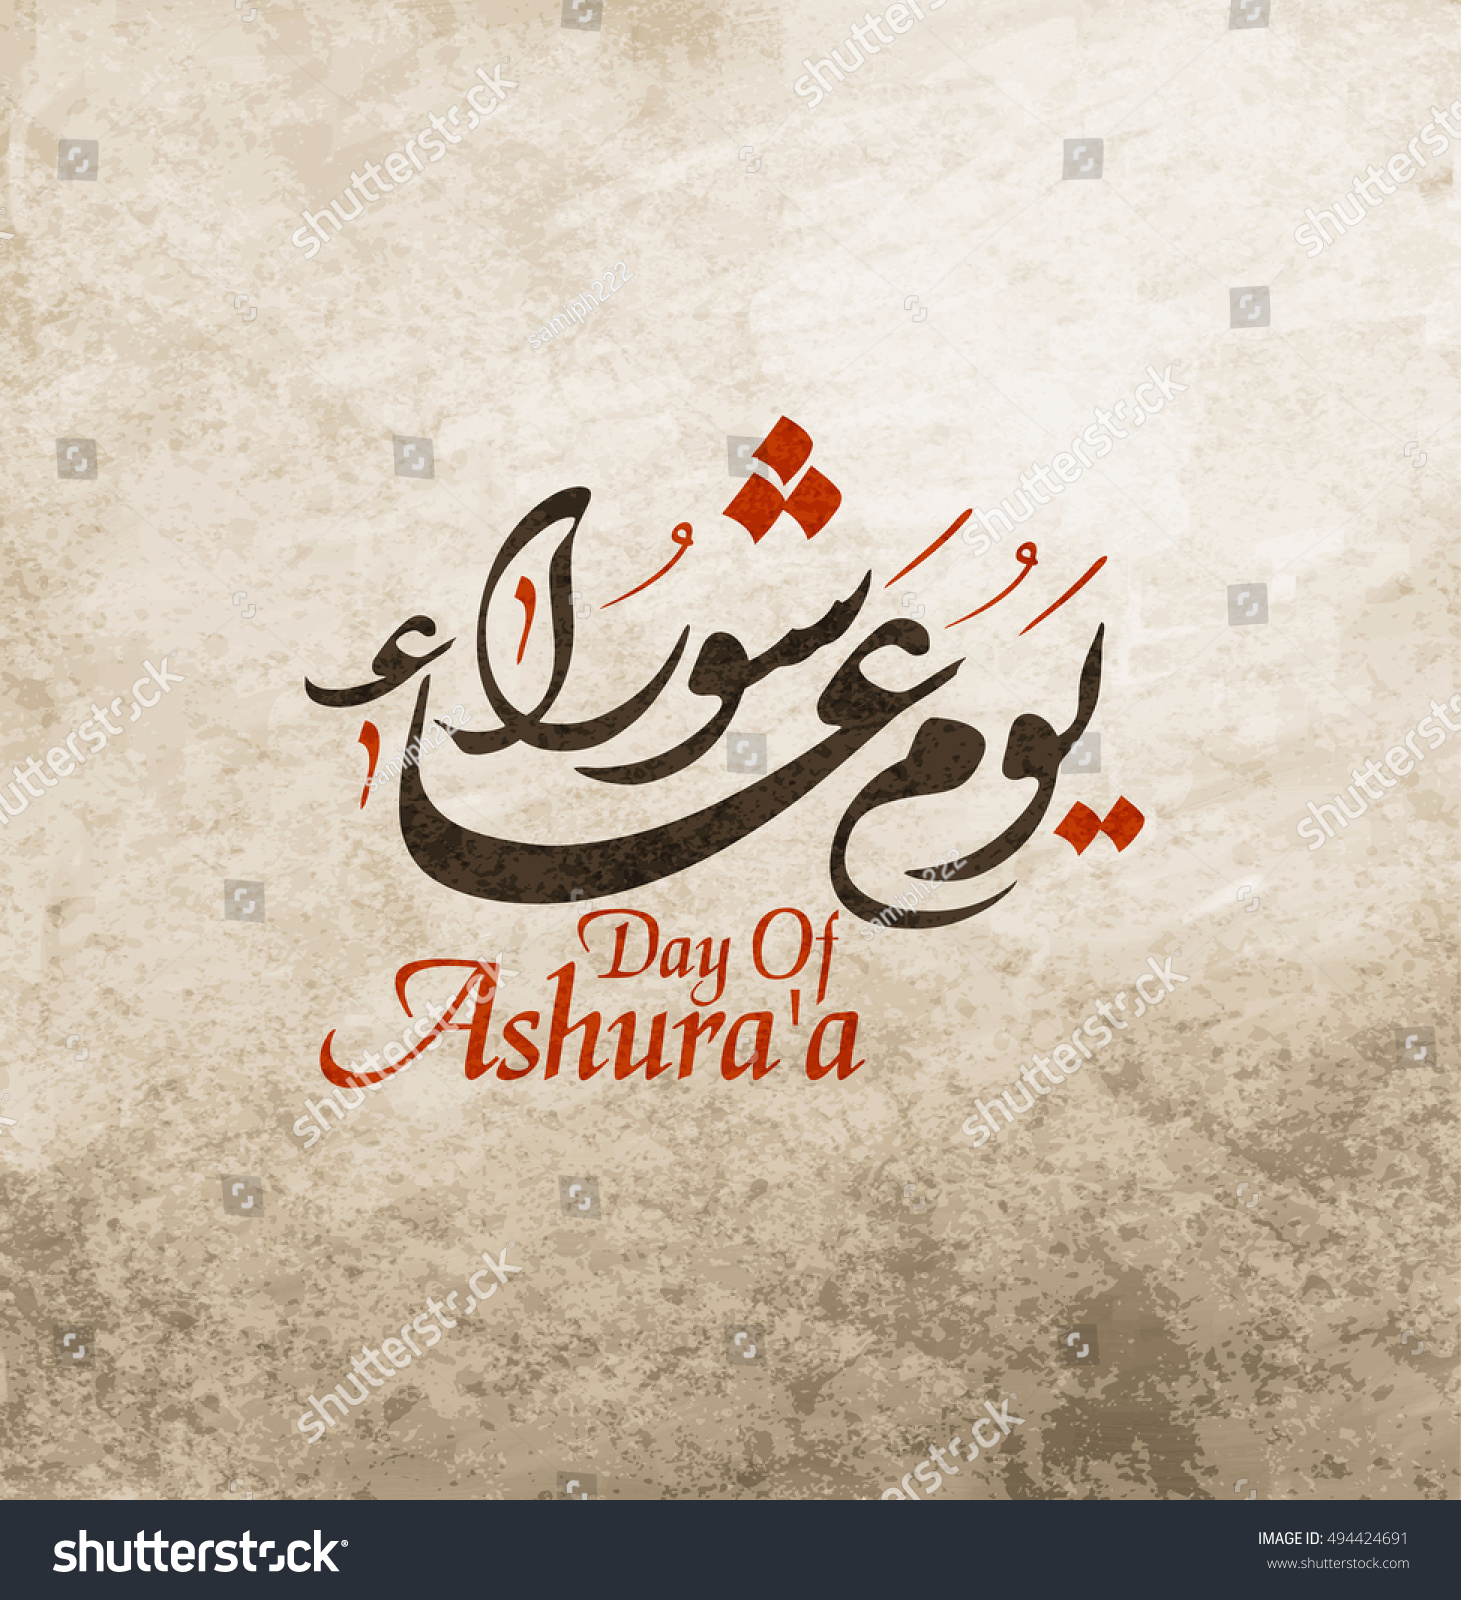 Муж на арабском языке. С днем рождения на арабском. Поздравление с днем рождения на арабском. Поздравления с днём рождения на арабском языке. День Ашура поздравление.